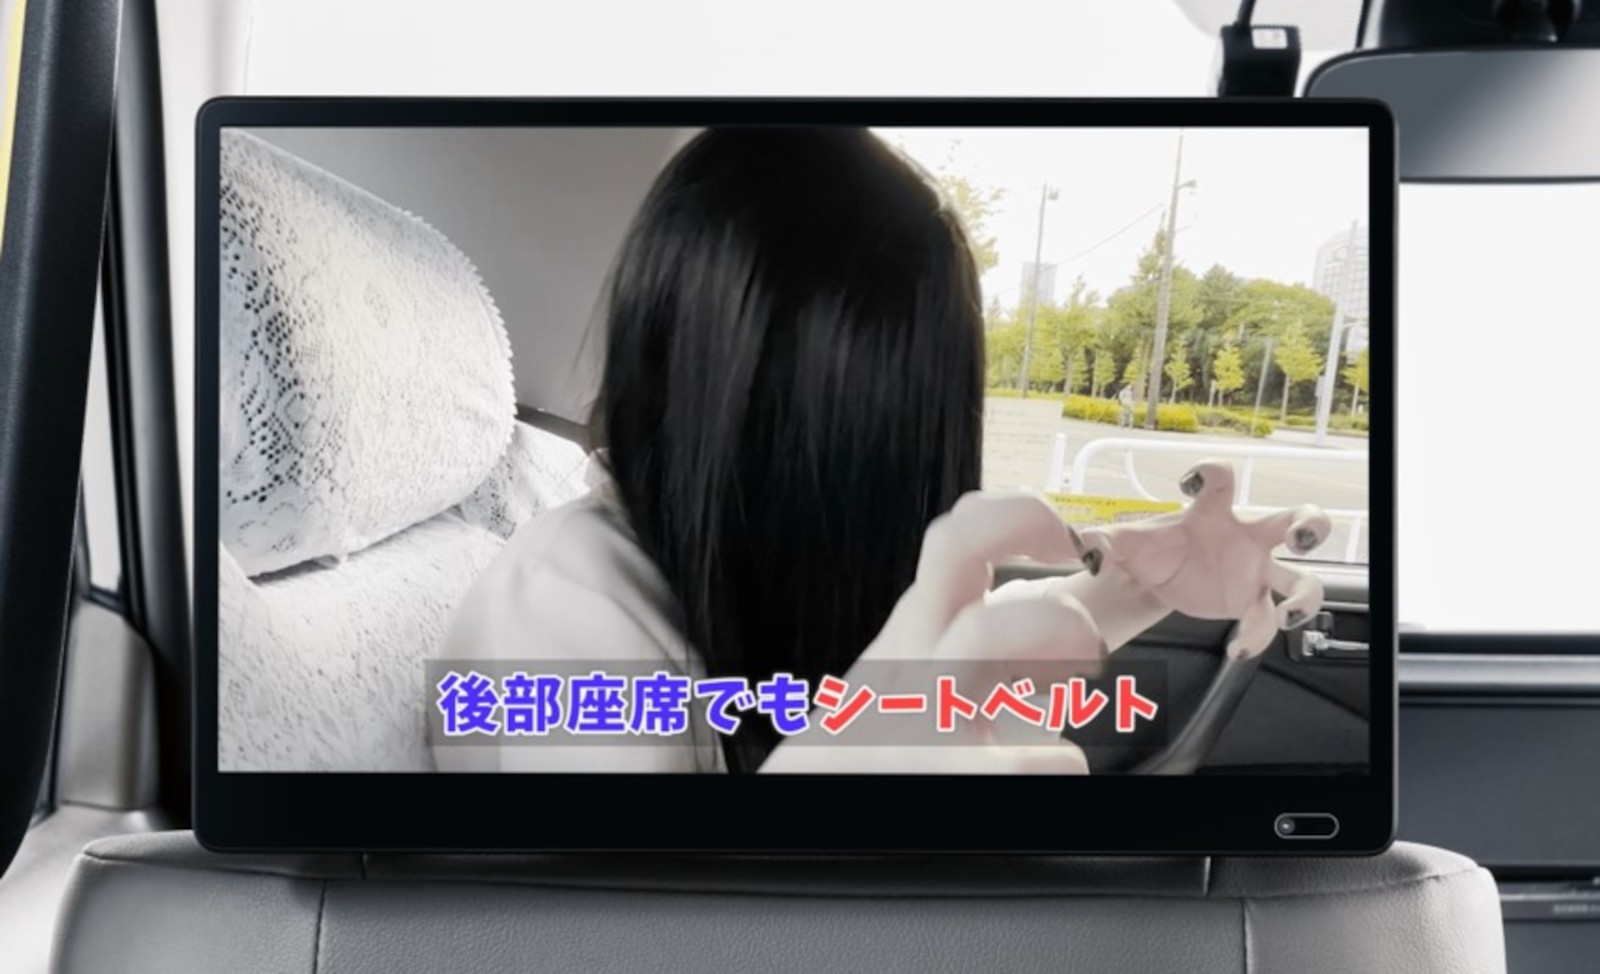 纪念《贞子DX》10月28日上映 东京再现恐怖贞子出租车